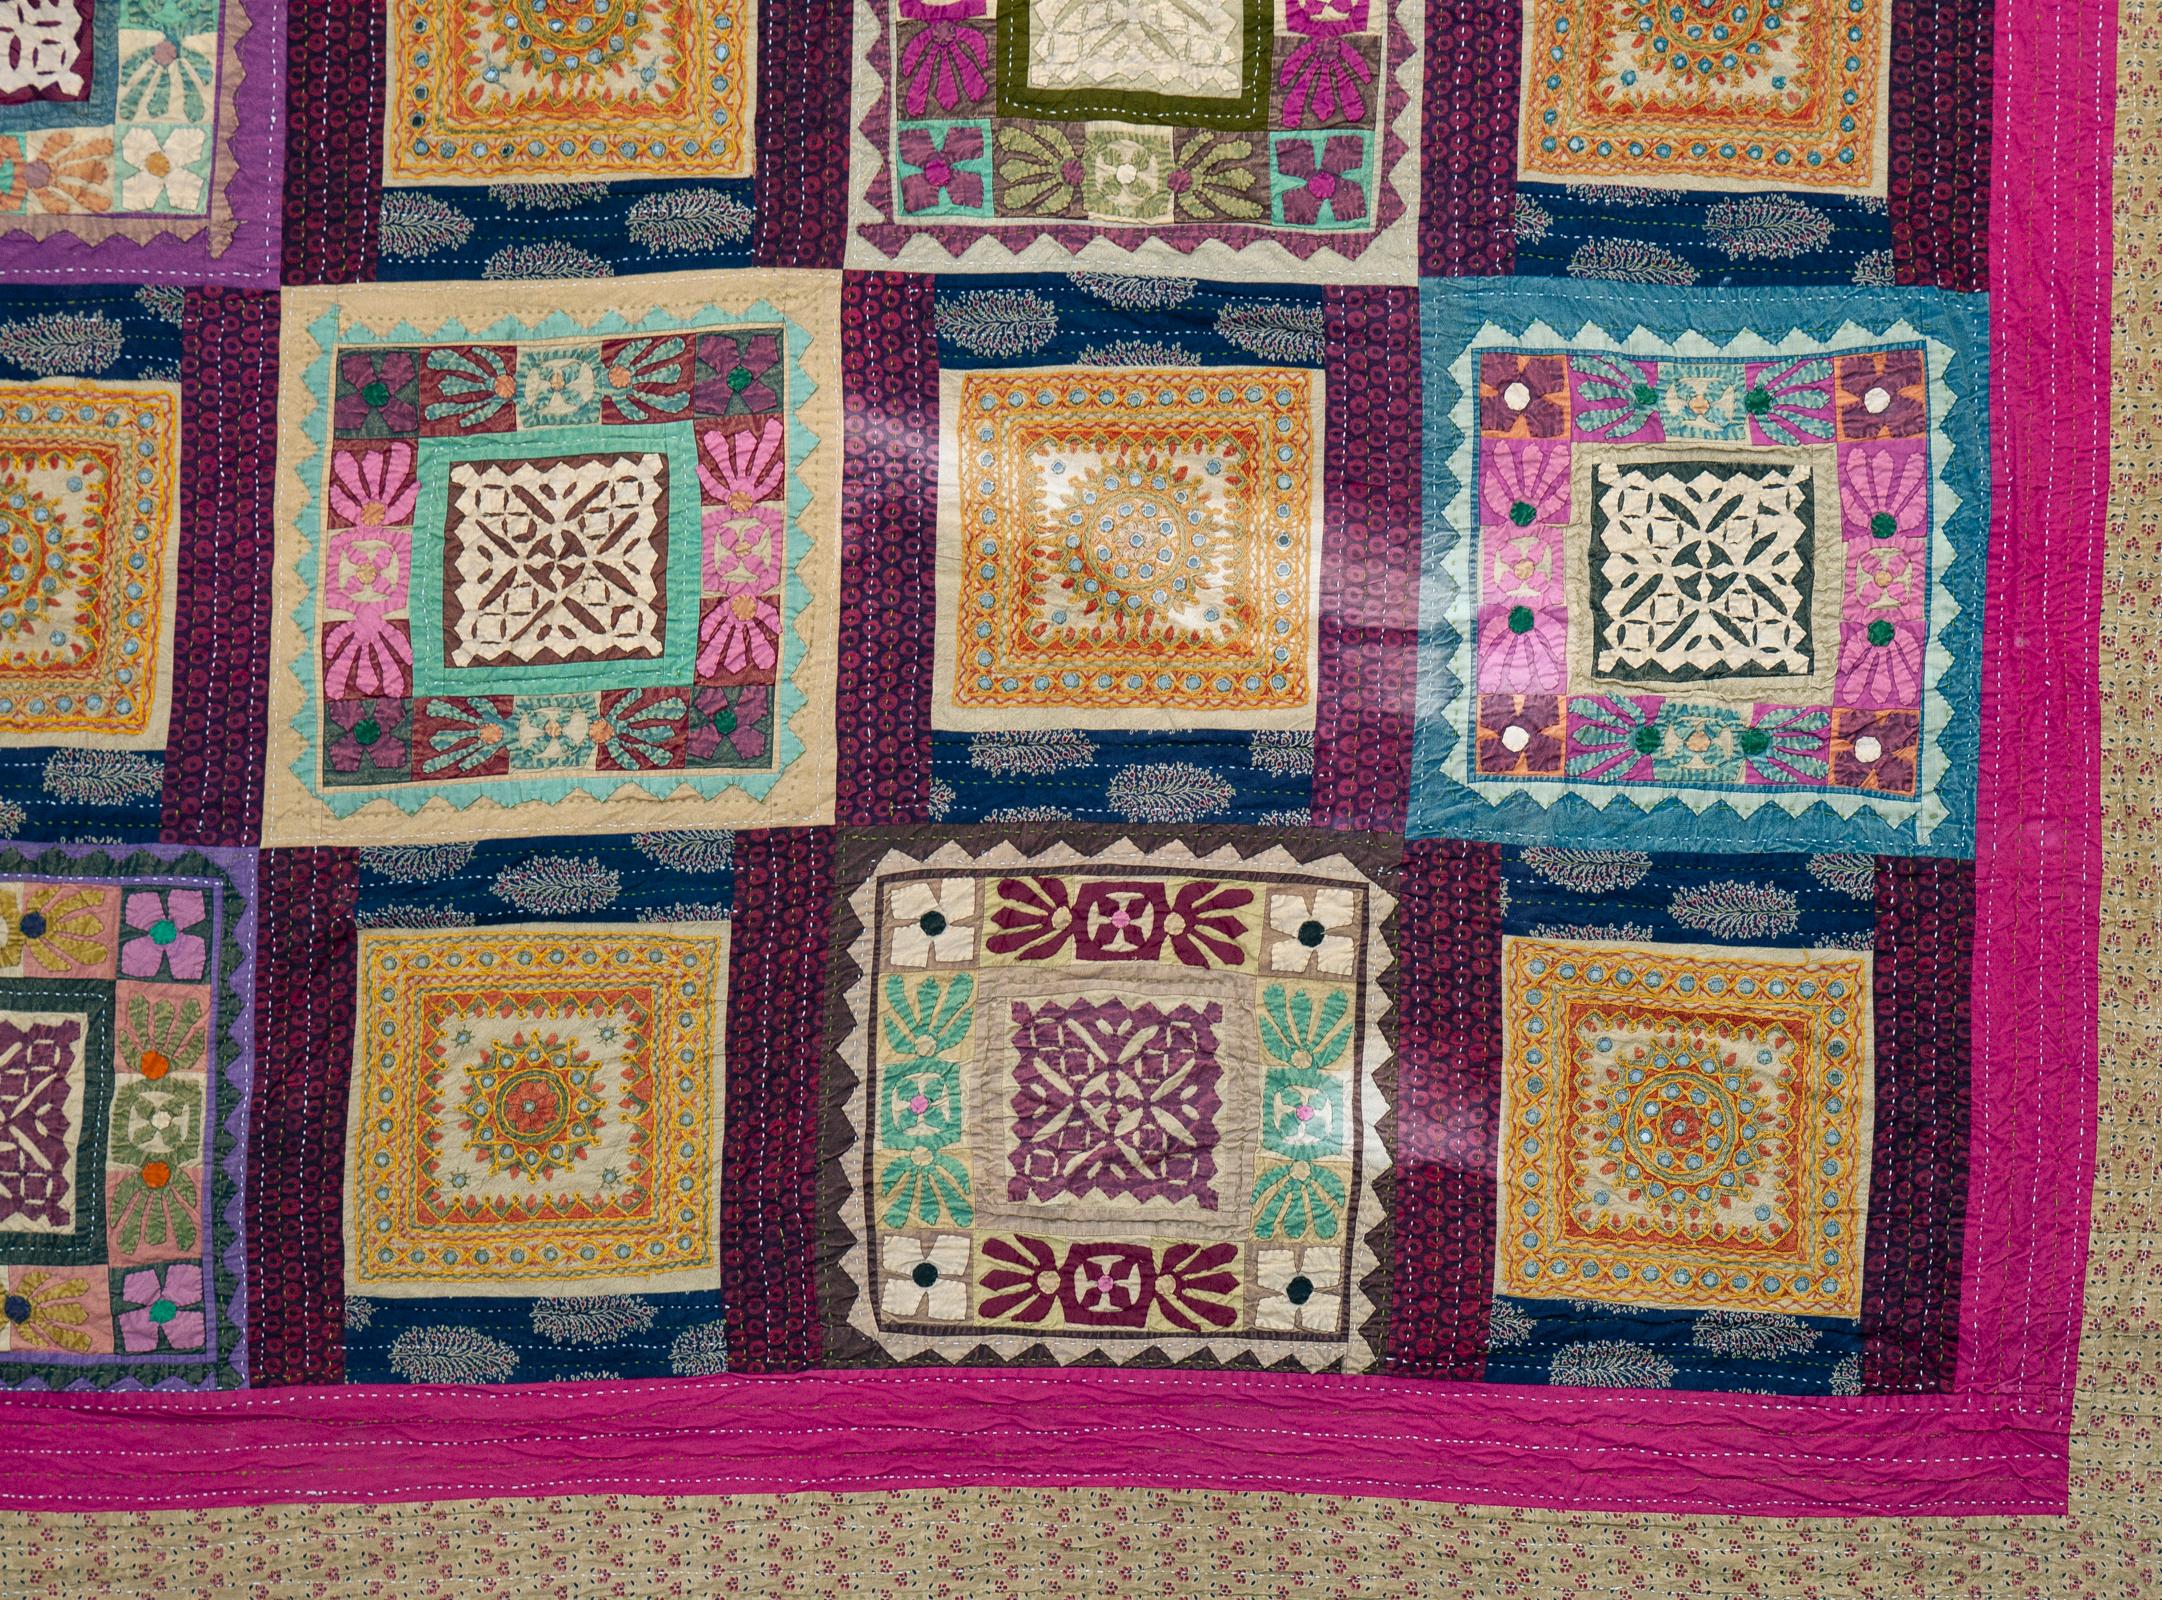 Buntes Patchwork-Textil mit 20 verschlungenen Quadraten, handgefertigt in Indien.
Als Wandbehang, Tagesdecke oder Überwurf zu verwenden.